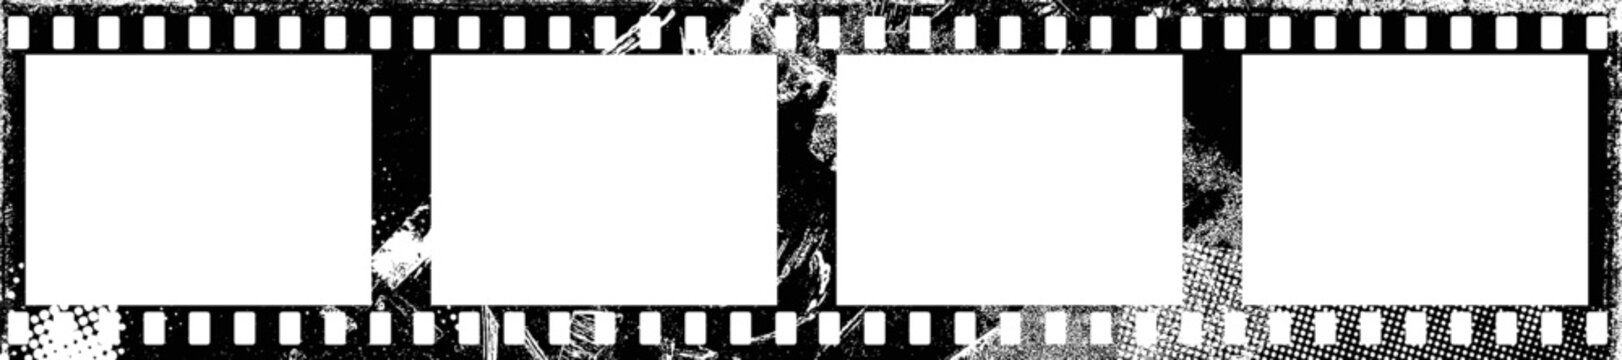 Grunge Filmstrip Border Frame . Film frame photo strip. Camera roll vintage design  .Photo Album. Grunge effect .Vector